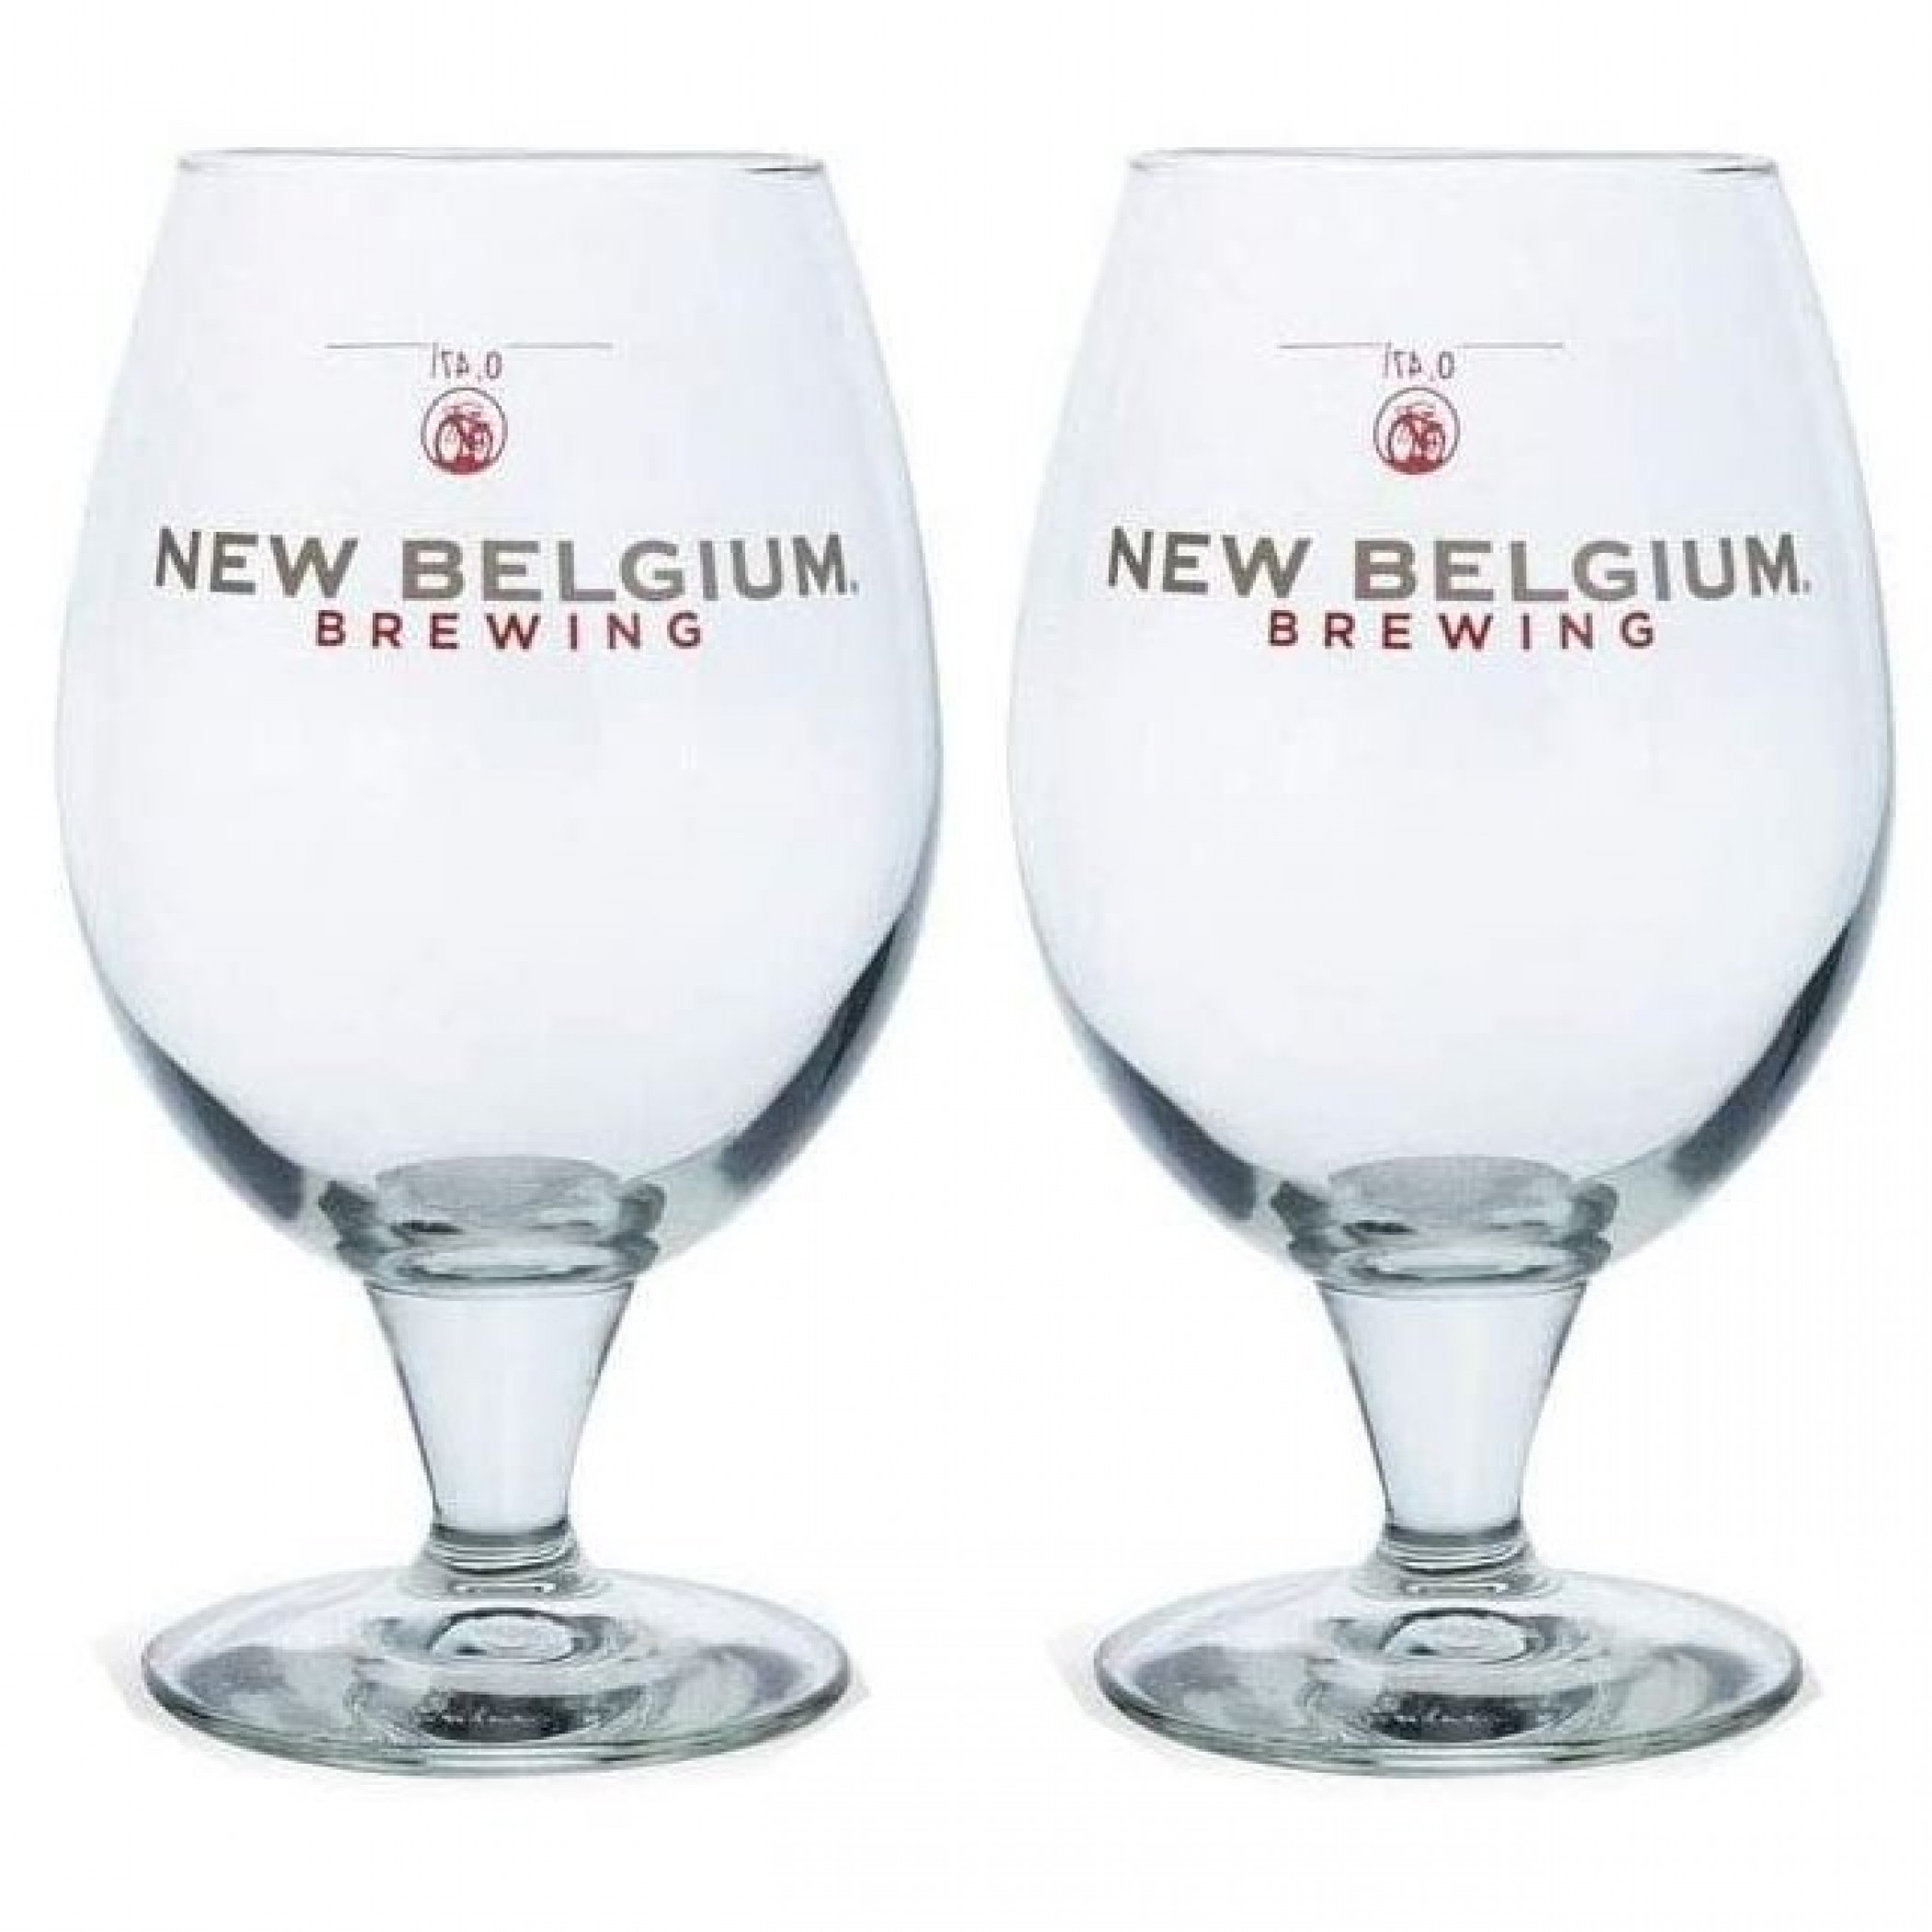 New Belgium Brewing Co. 16oz. Belgian Beer Glass 2-Pack